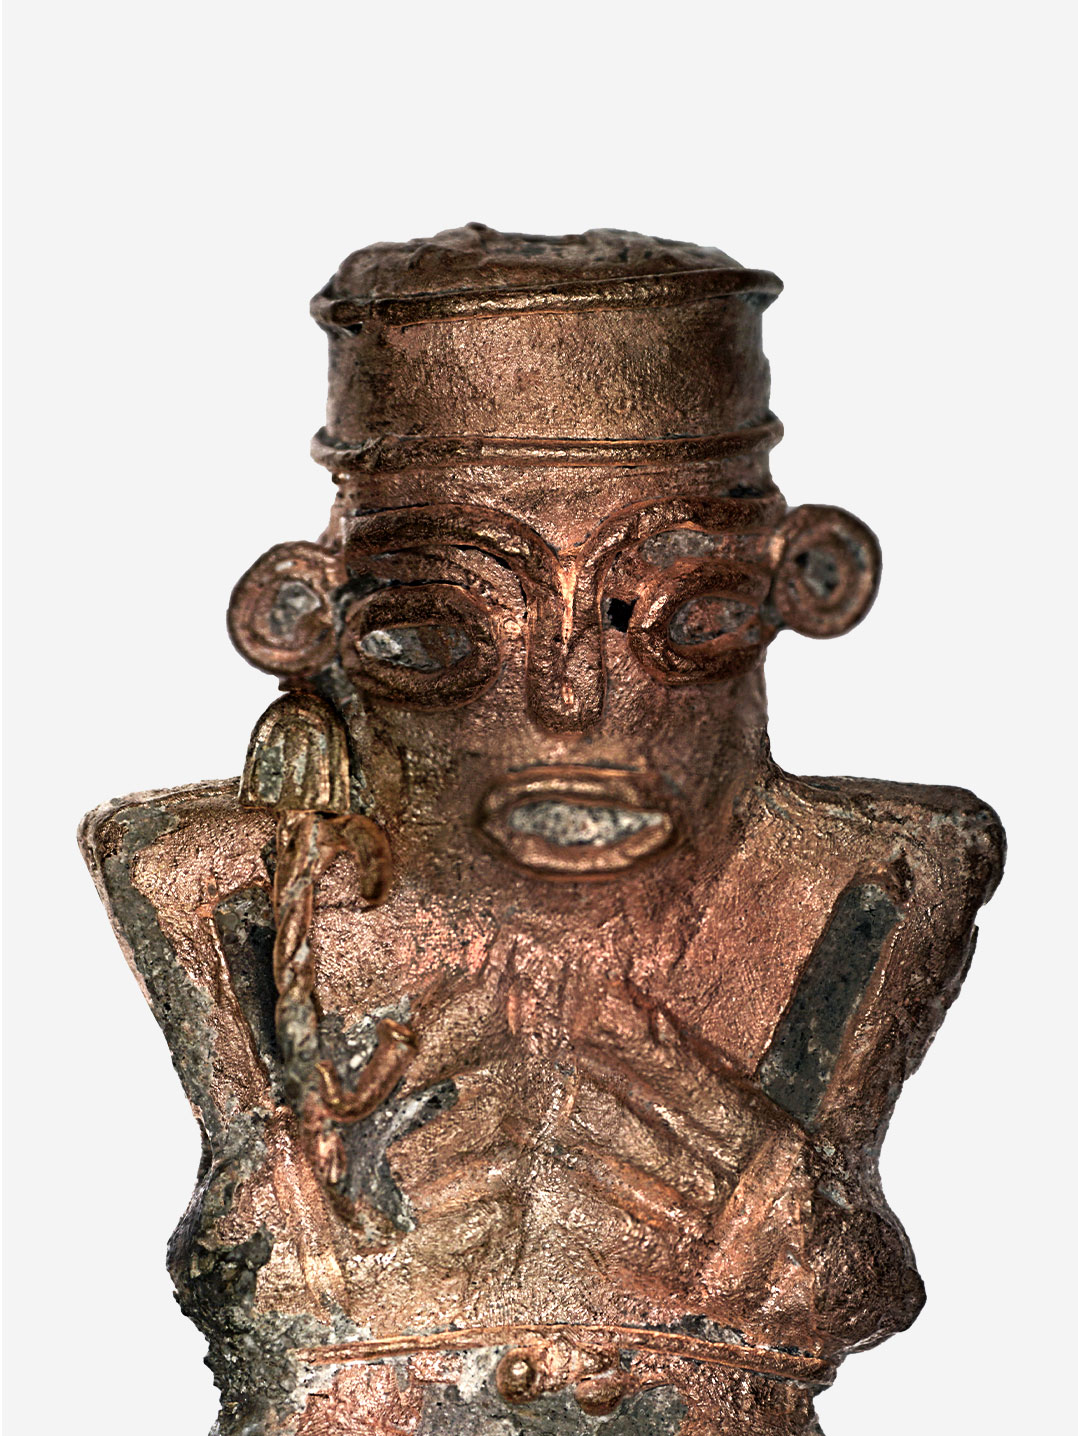 Artefakte der alten Muisca-Zivilisation werden mit Artec Eva dokumentiert, um die präkolumbianische Geschichte zu bewahren